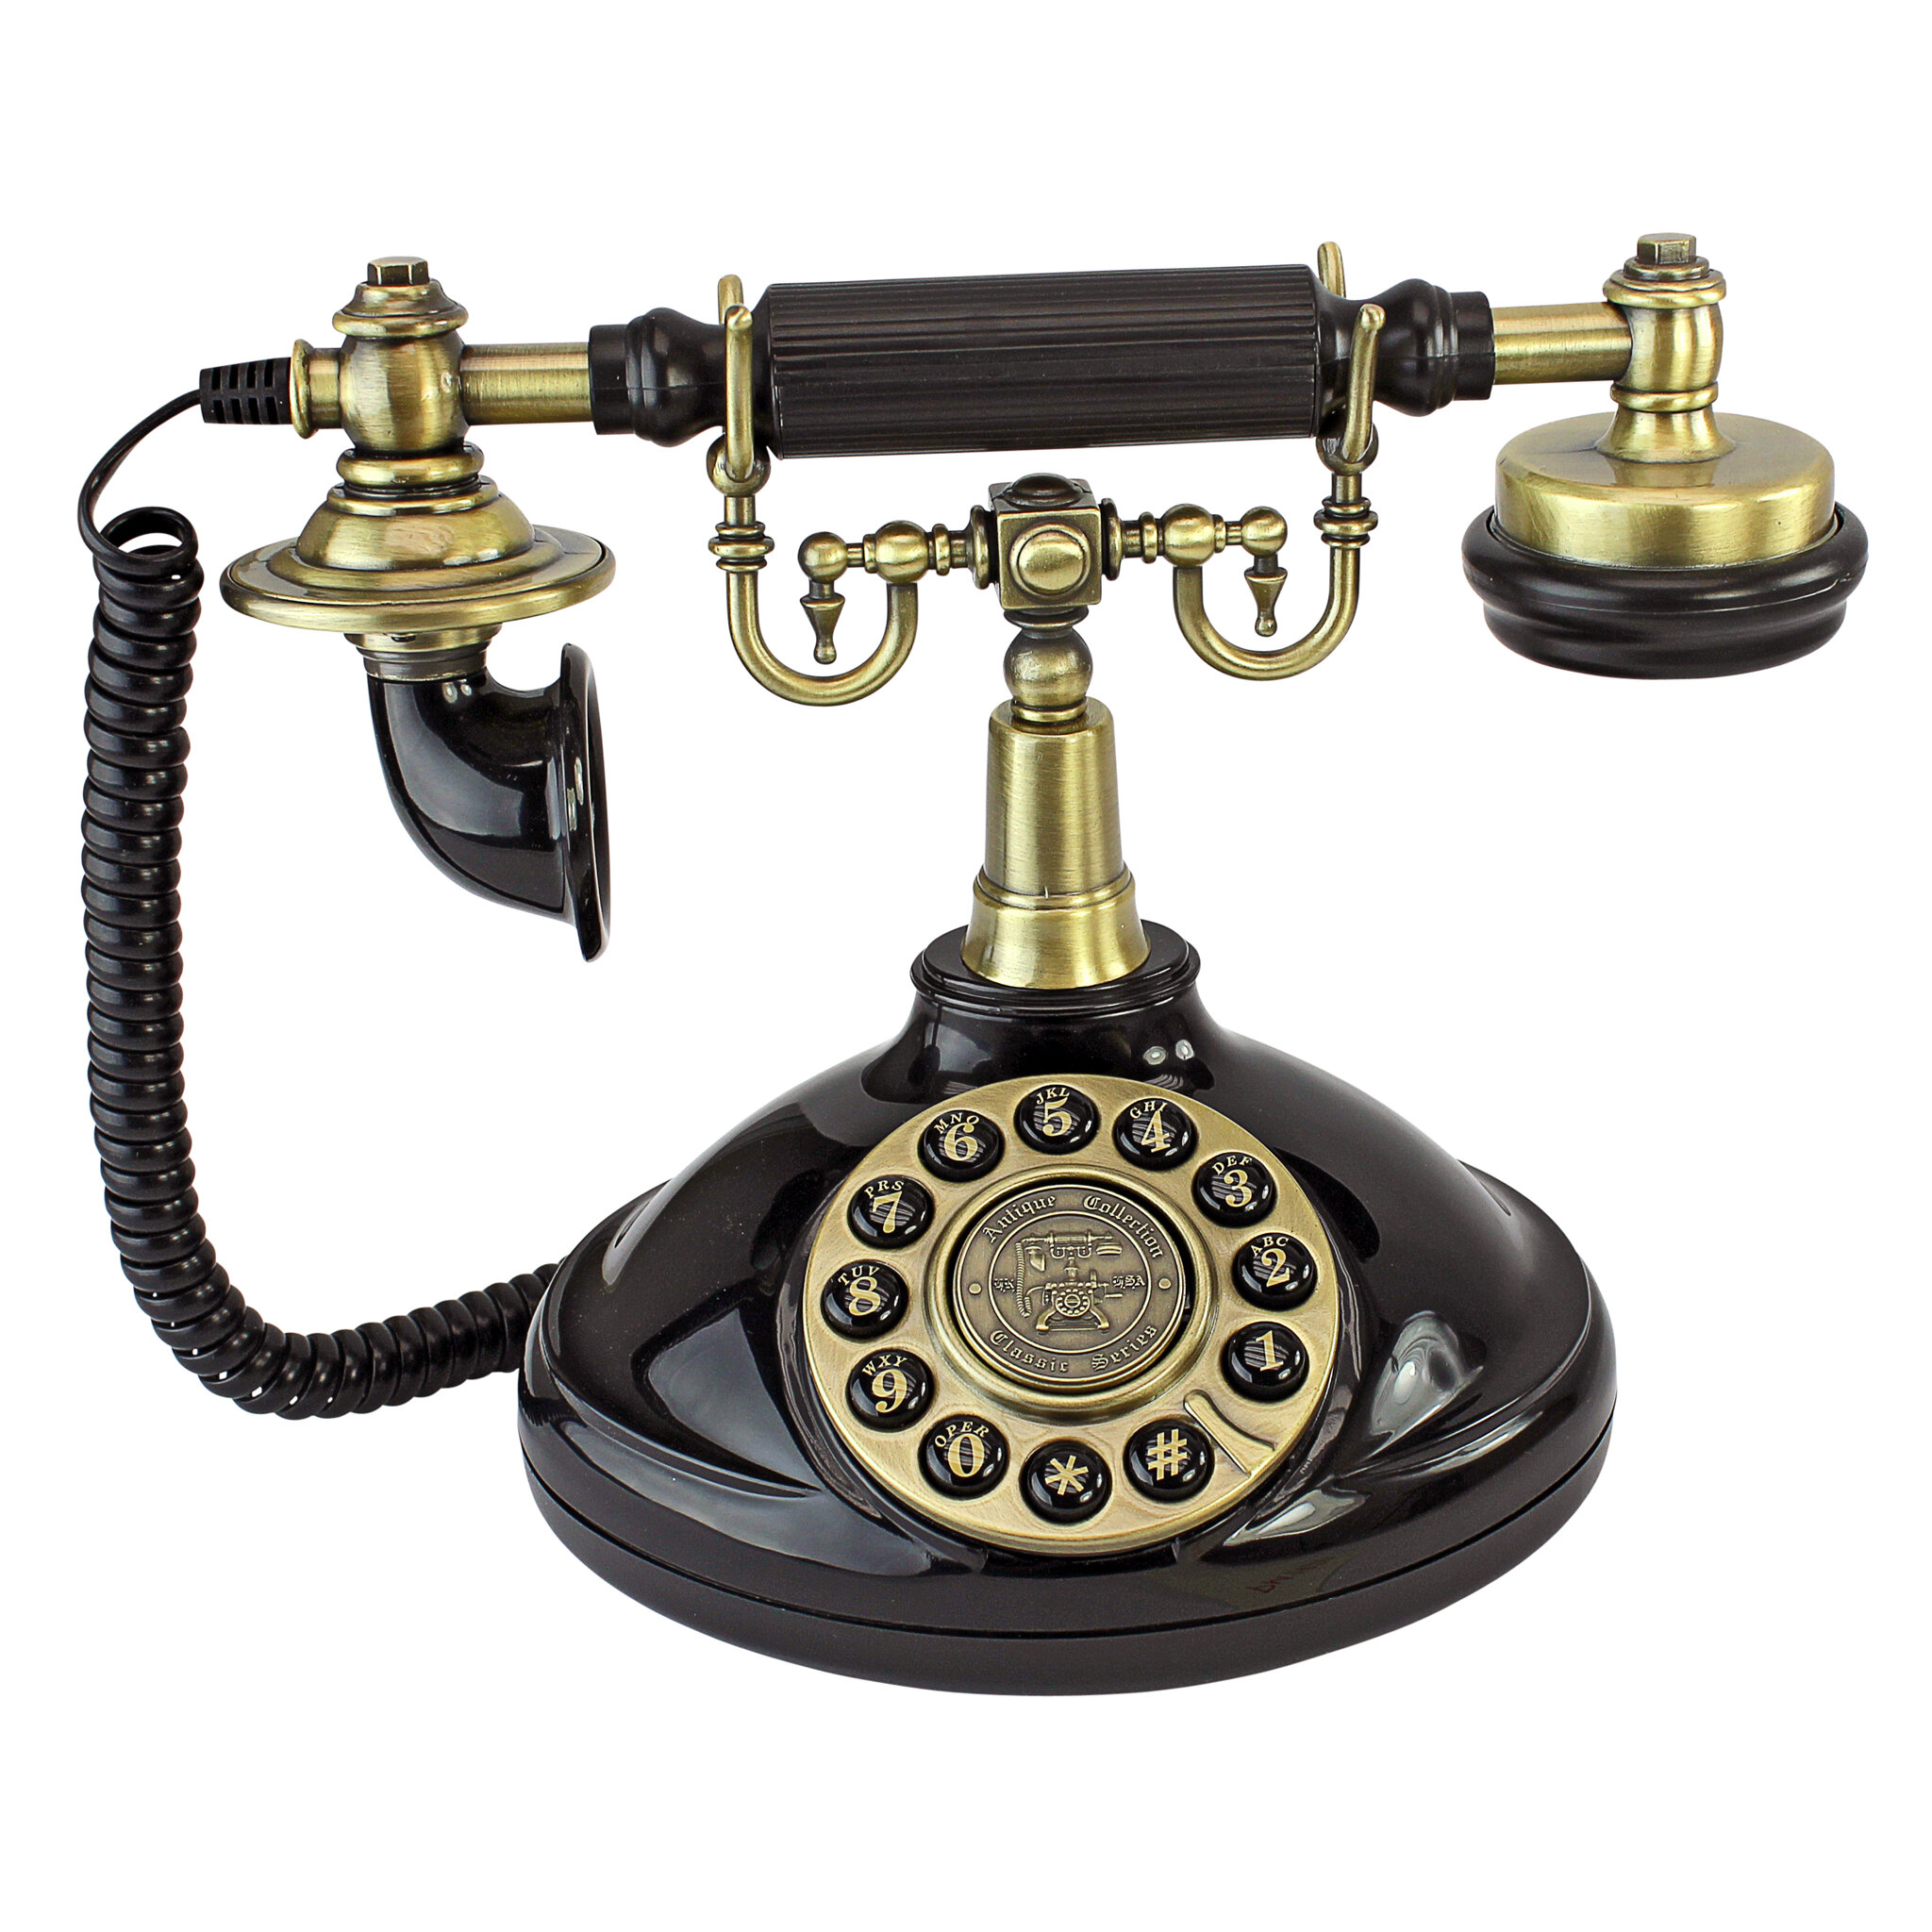 Collection телефон. Телефонный аппарат. Телефонный аппарат ретро. Старинный телефон. Трубка старого телефона.